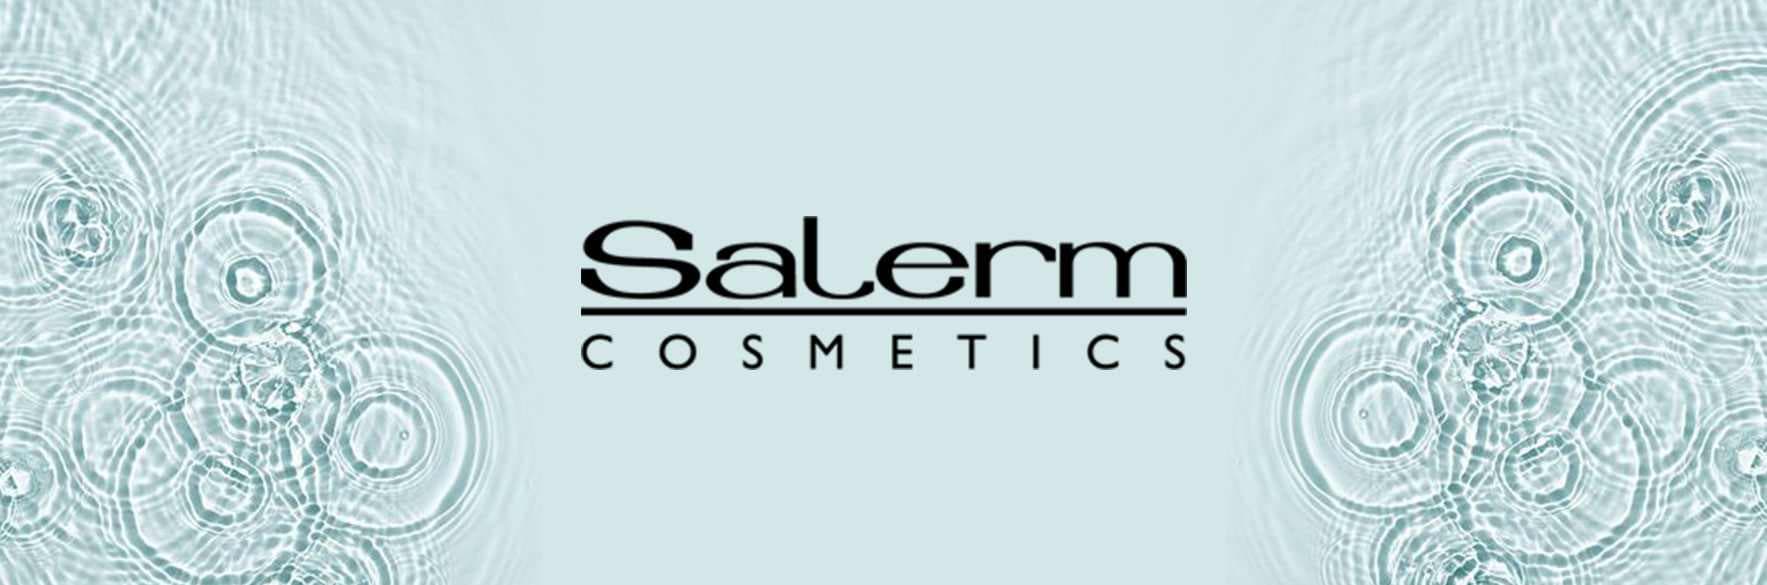 سالرم کازمتیکس | خرید محصولات سالرم SALERM COSMETICS